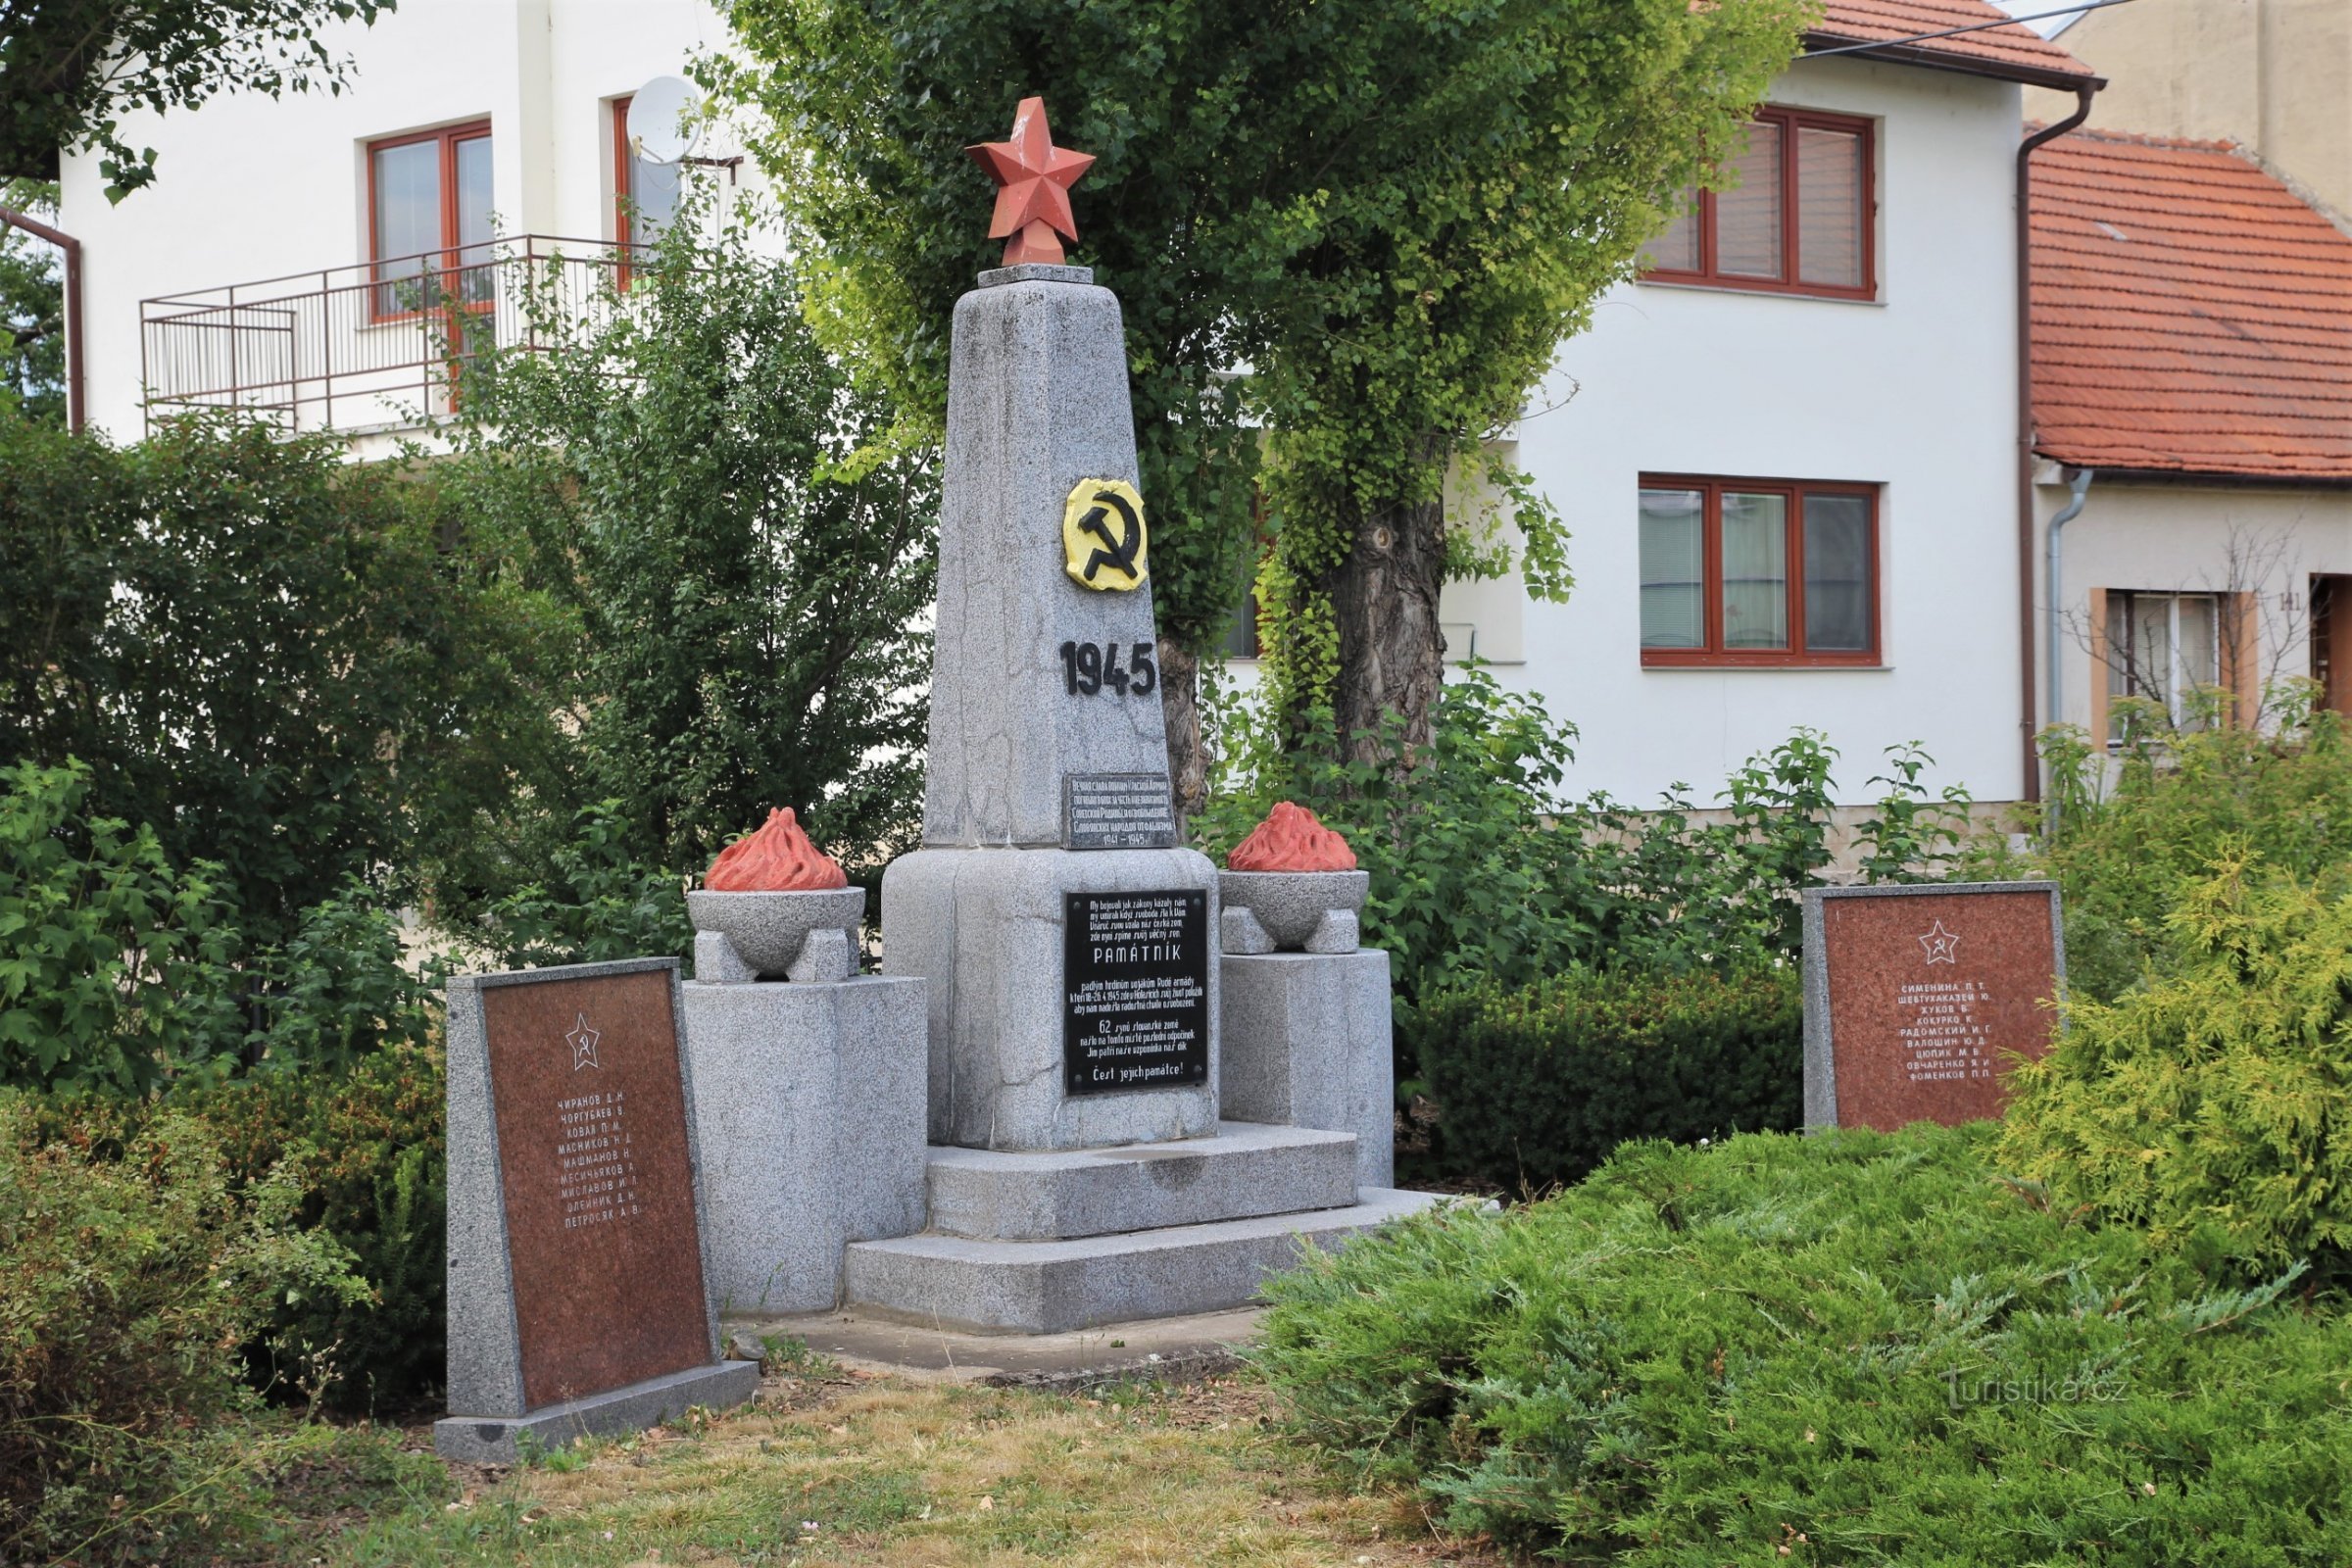 Nekdanji spomenik padlim vojakom Rdeče armade, ki je tu stal do leta 2018 - poletje 2016